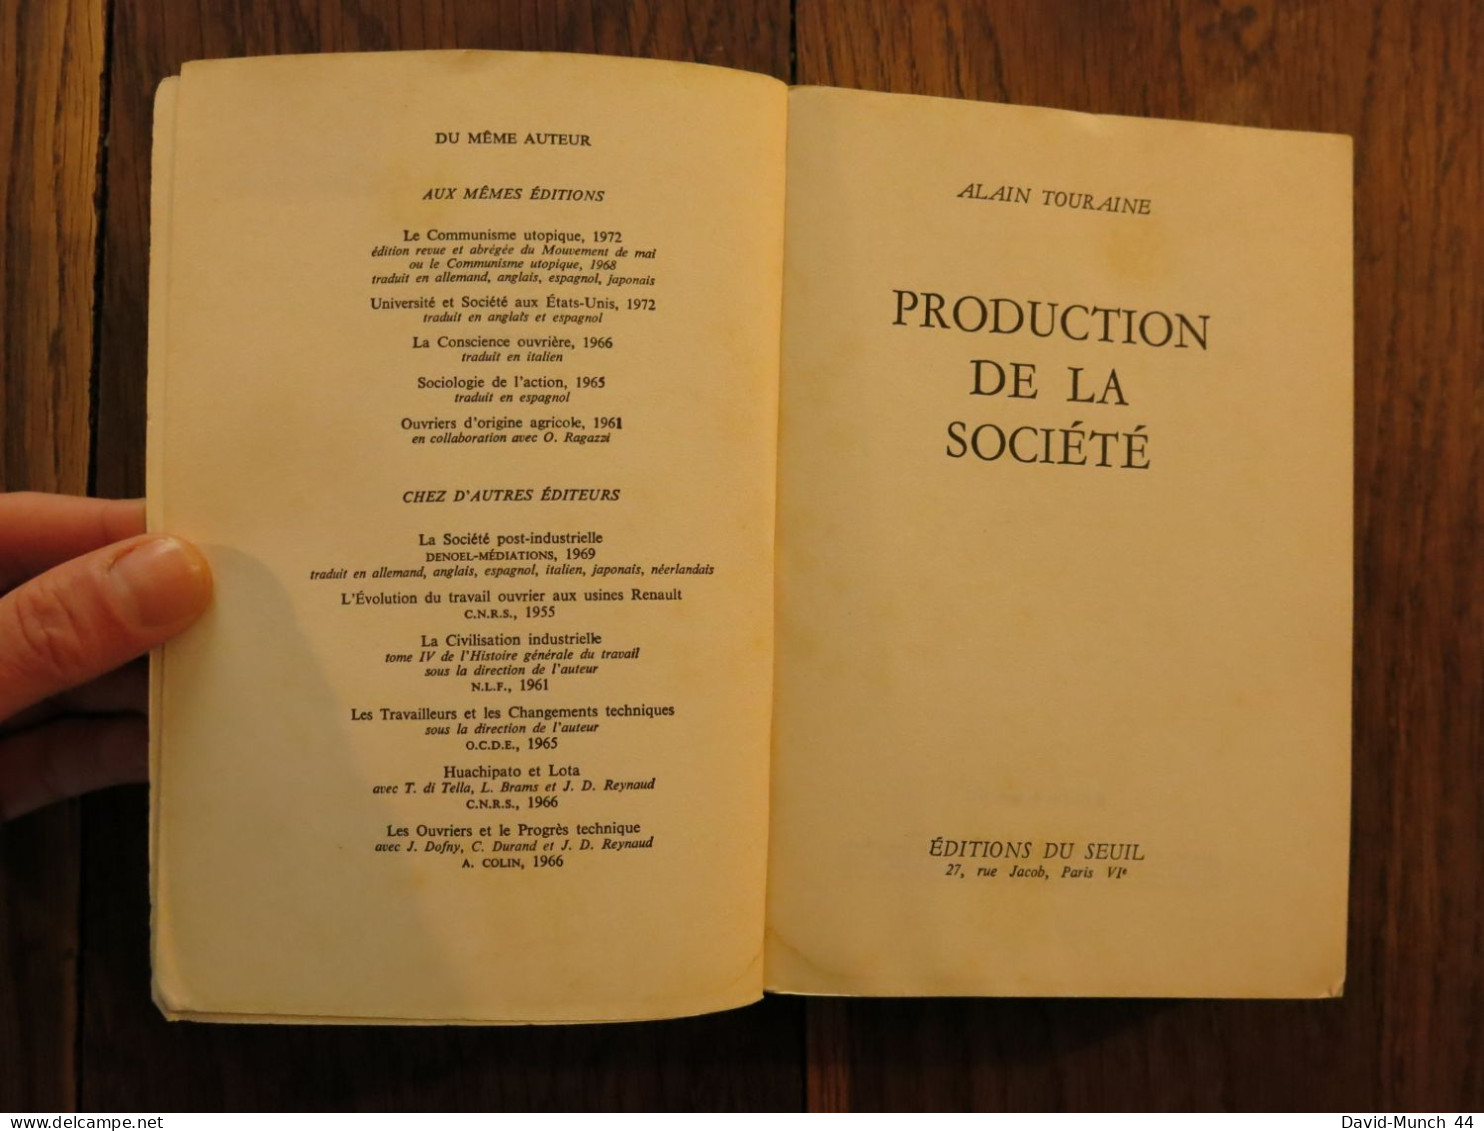 Production De La Société De Alain Touraine. Editions Du Seuil, Collection Sociologie, Paris. 1973 - Sociologia